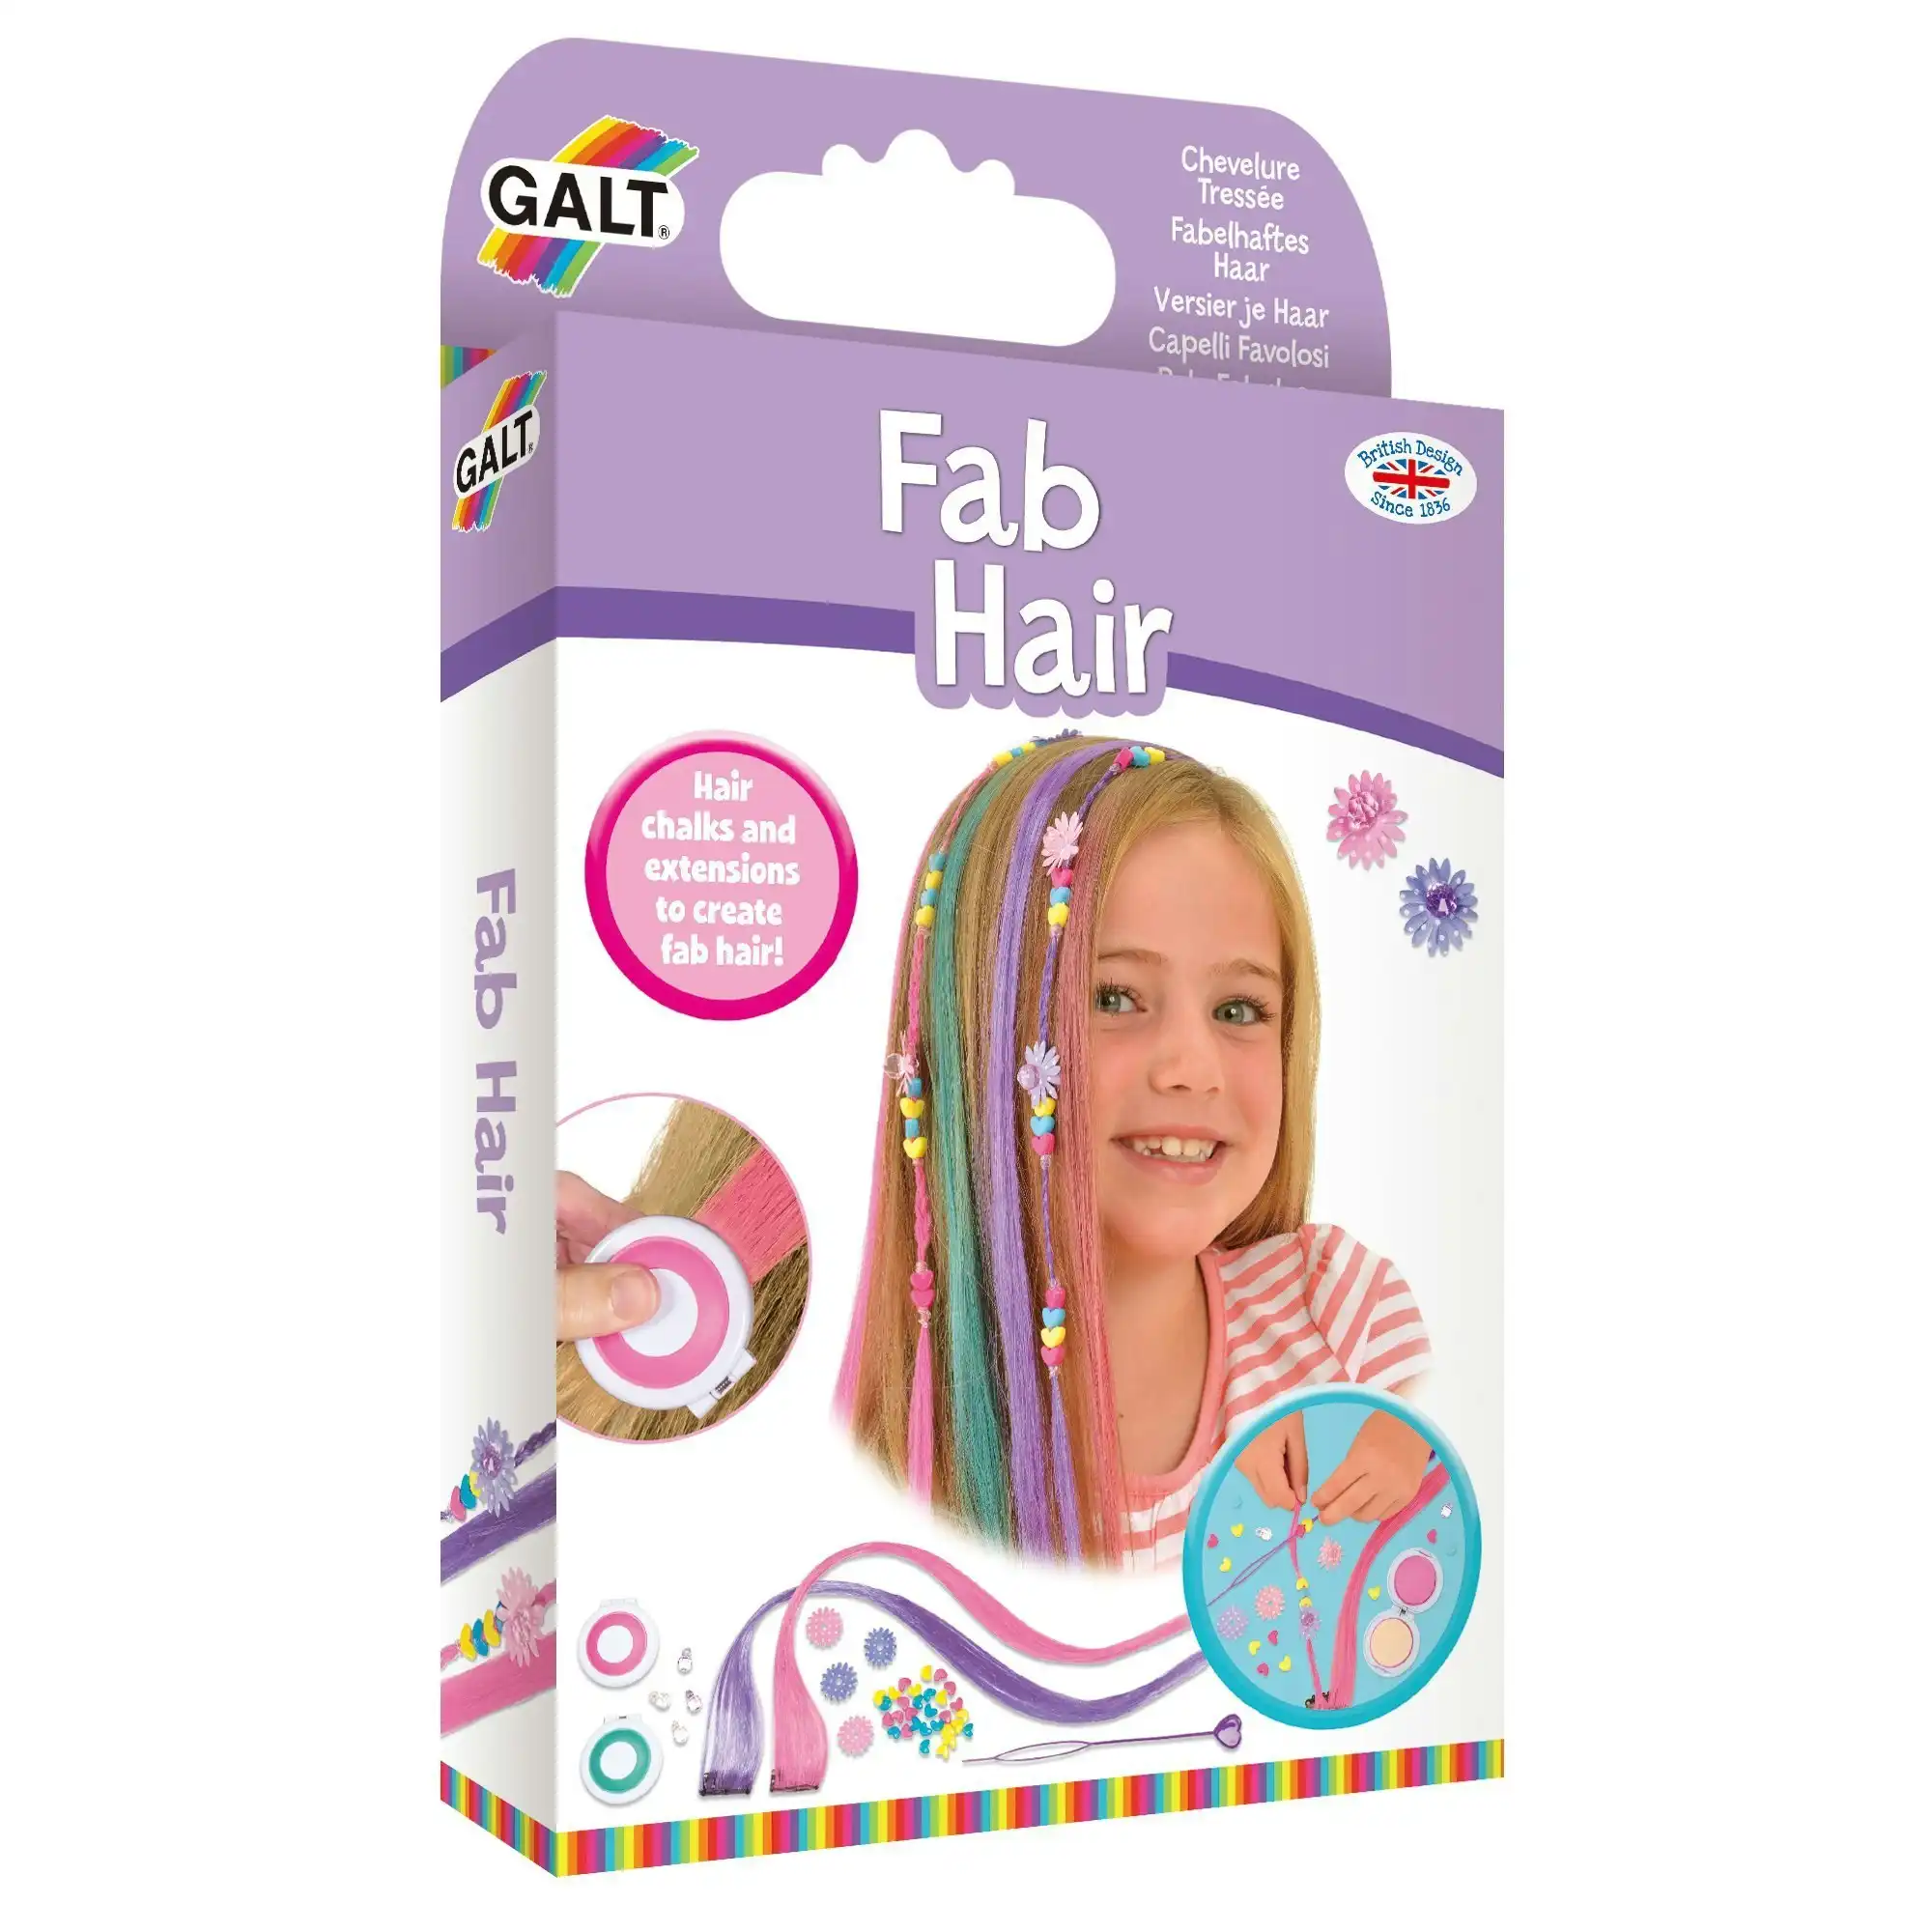 Galt - Fab Hair